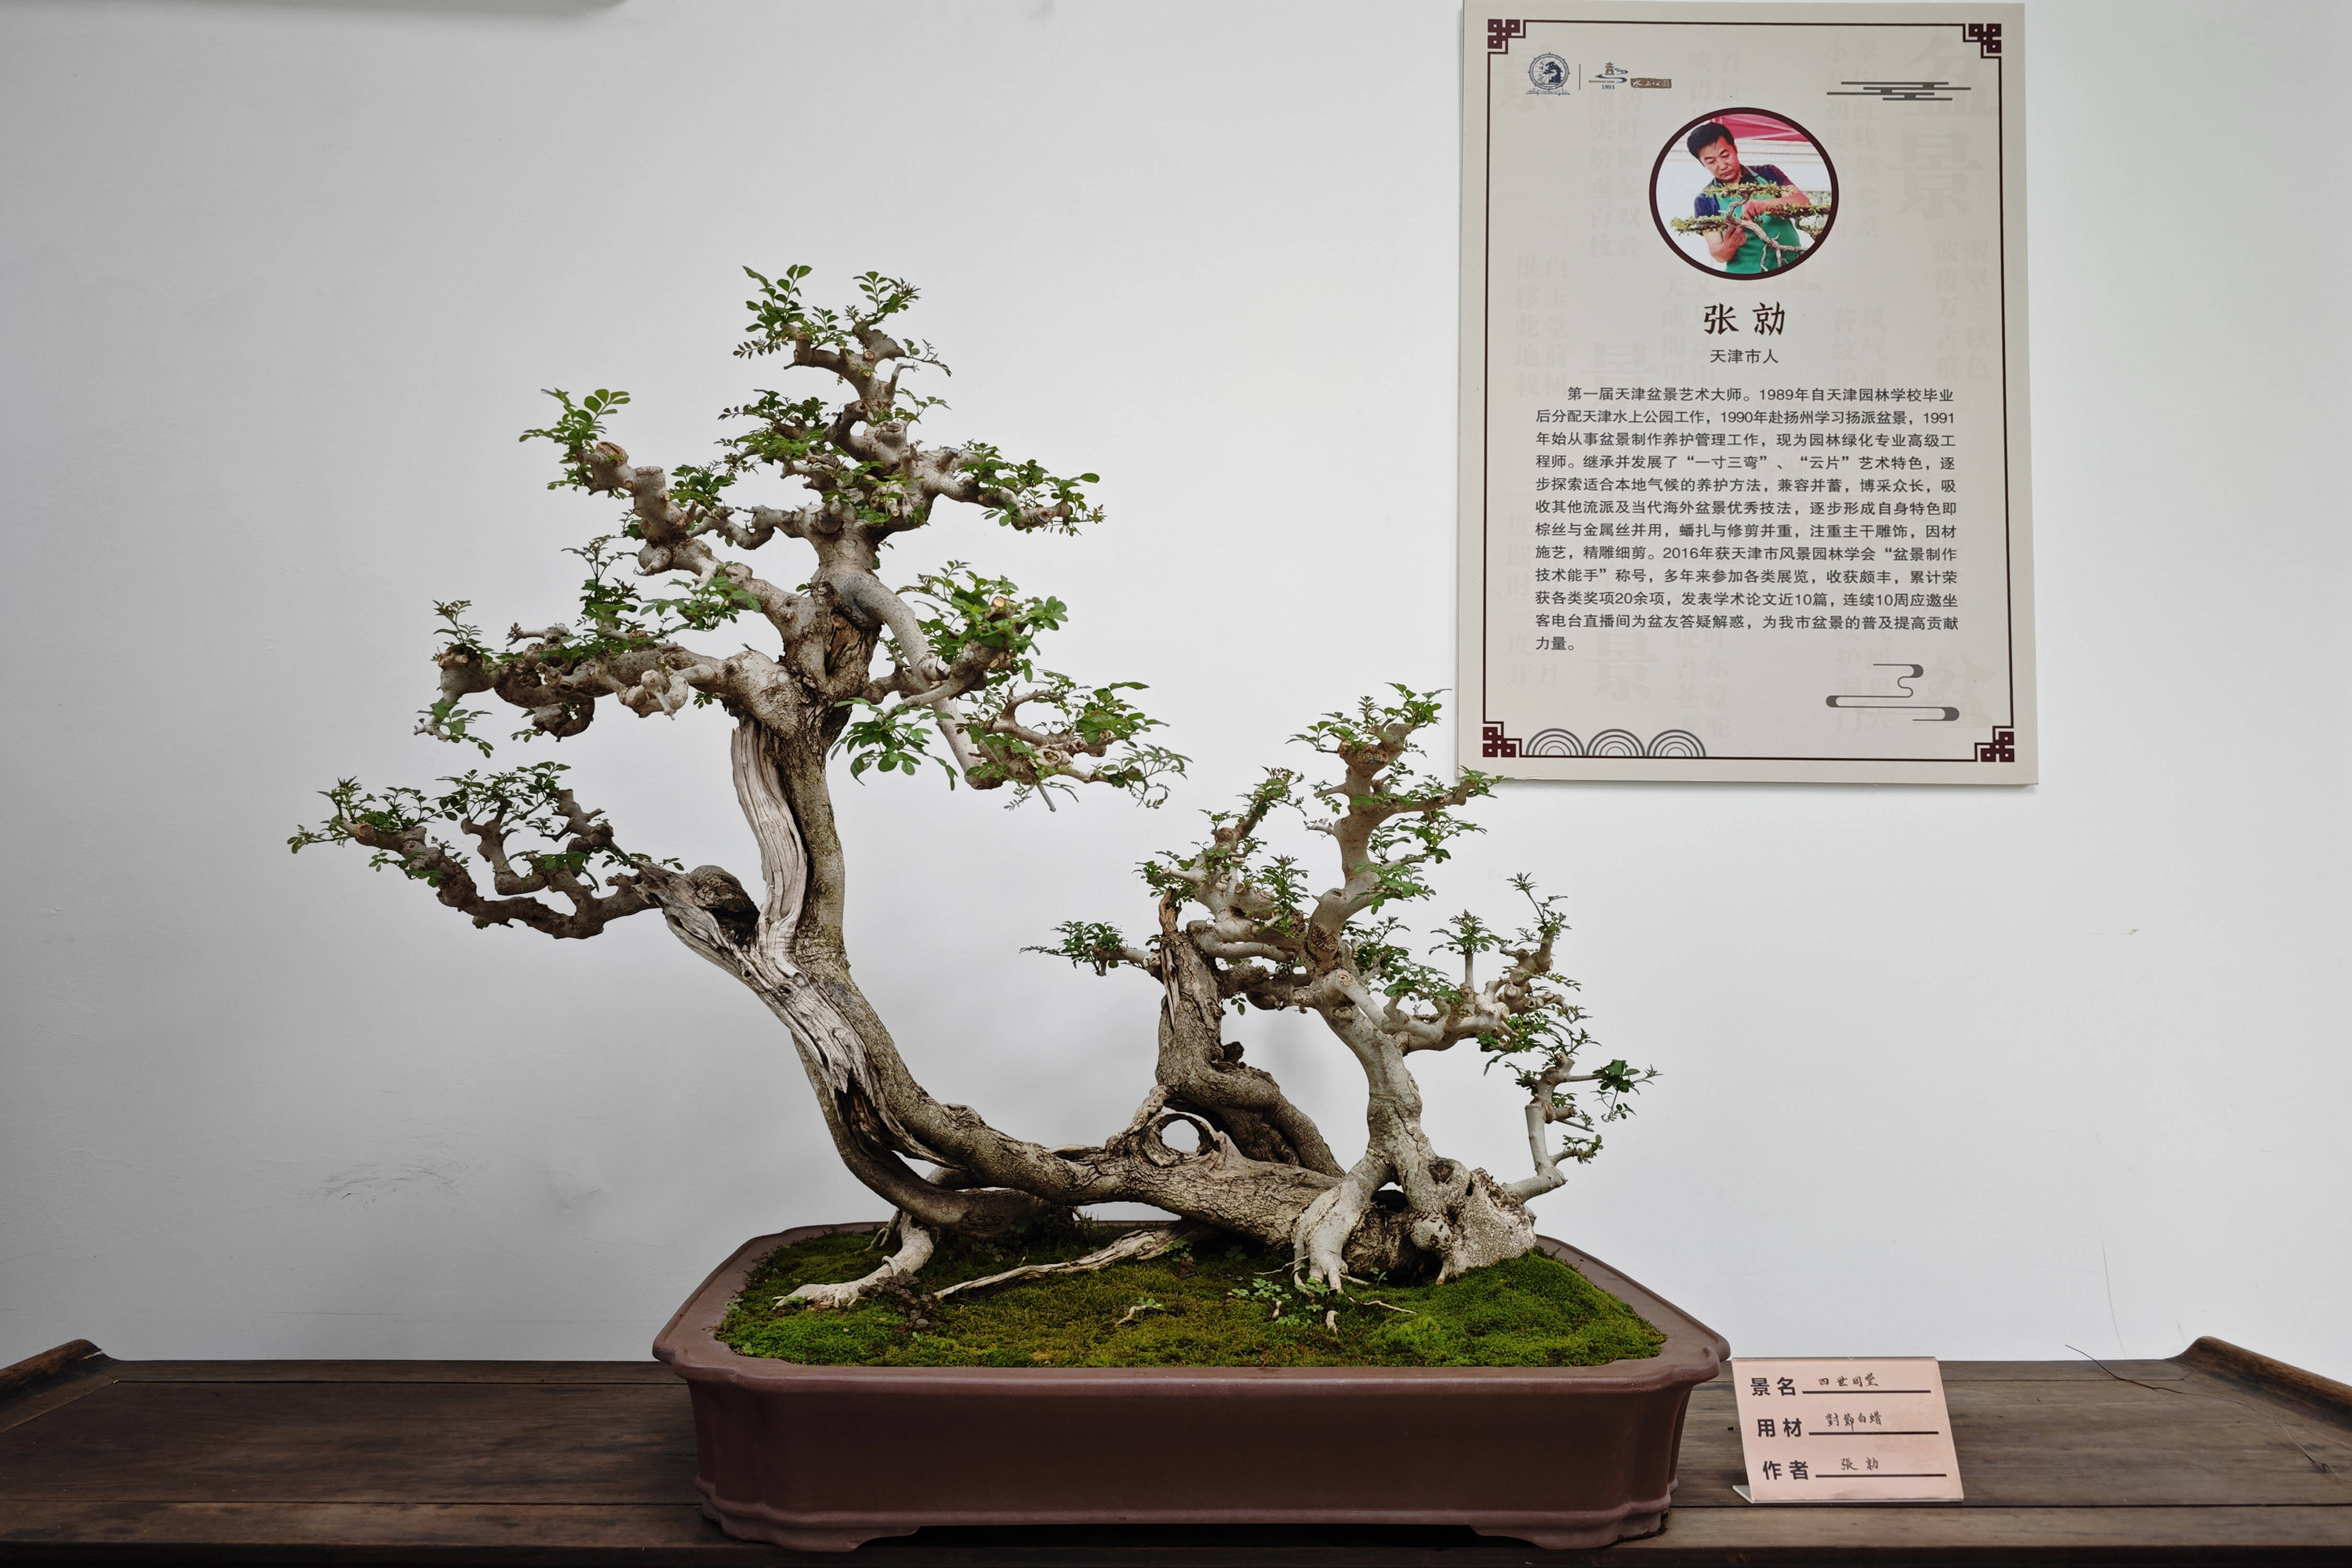 天津市花卉盆景协会将在天津盆景园举行《天津市盆景艺术精品展》